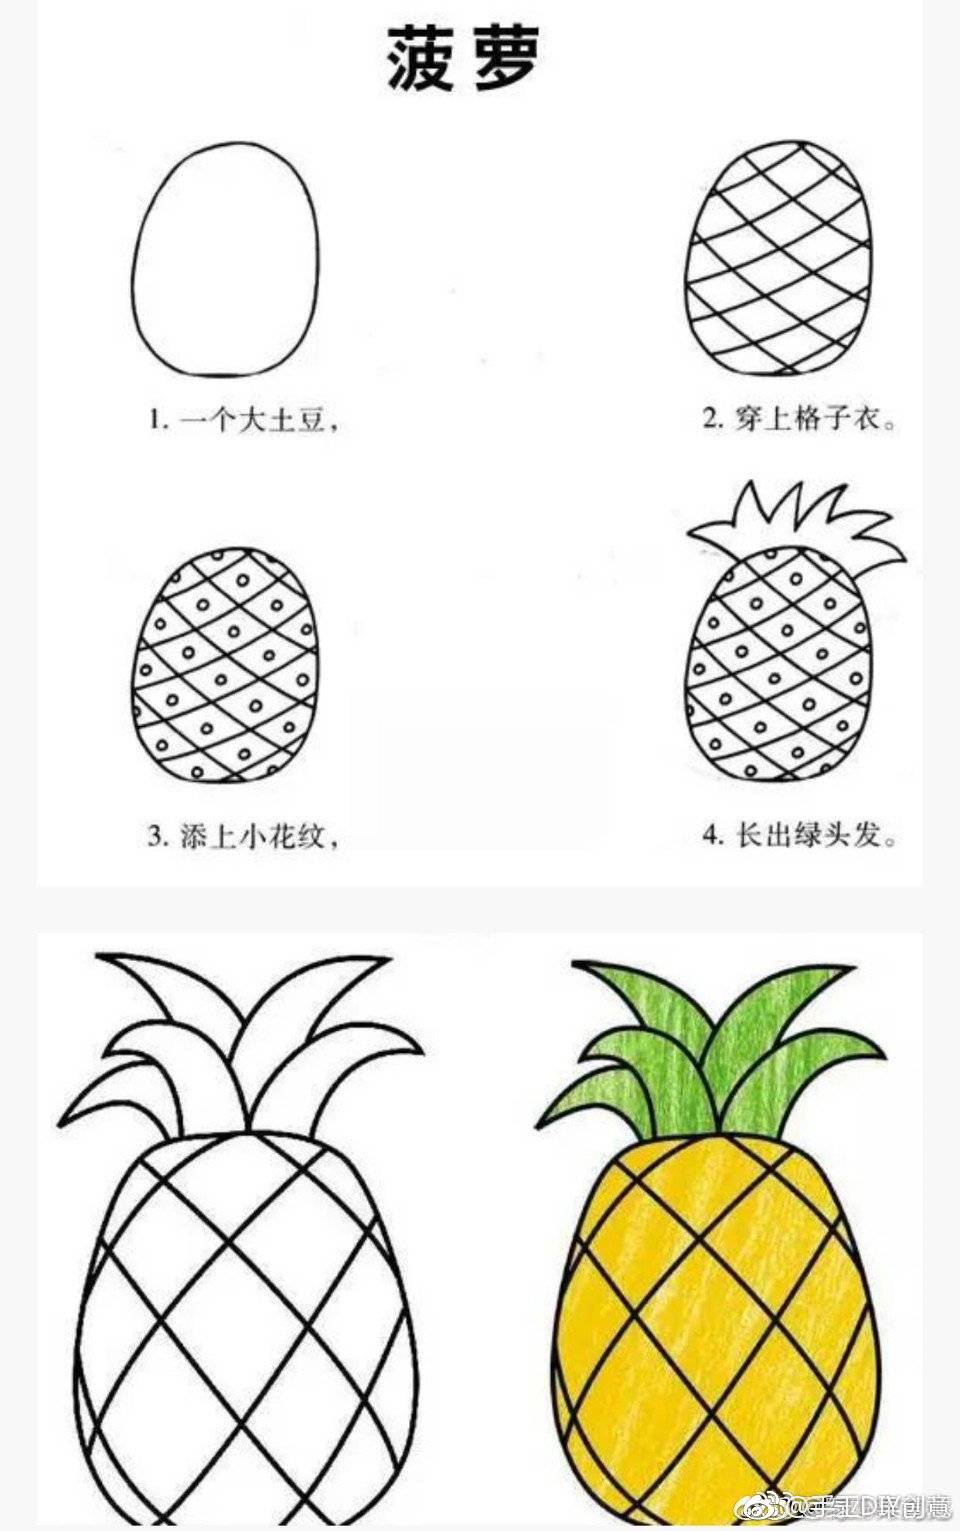 【亲子育儿绘画】简单的水果简笔画教程,快和孩子一起画吧